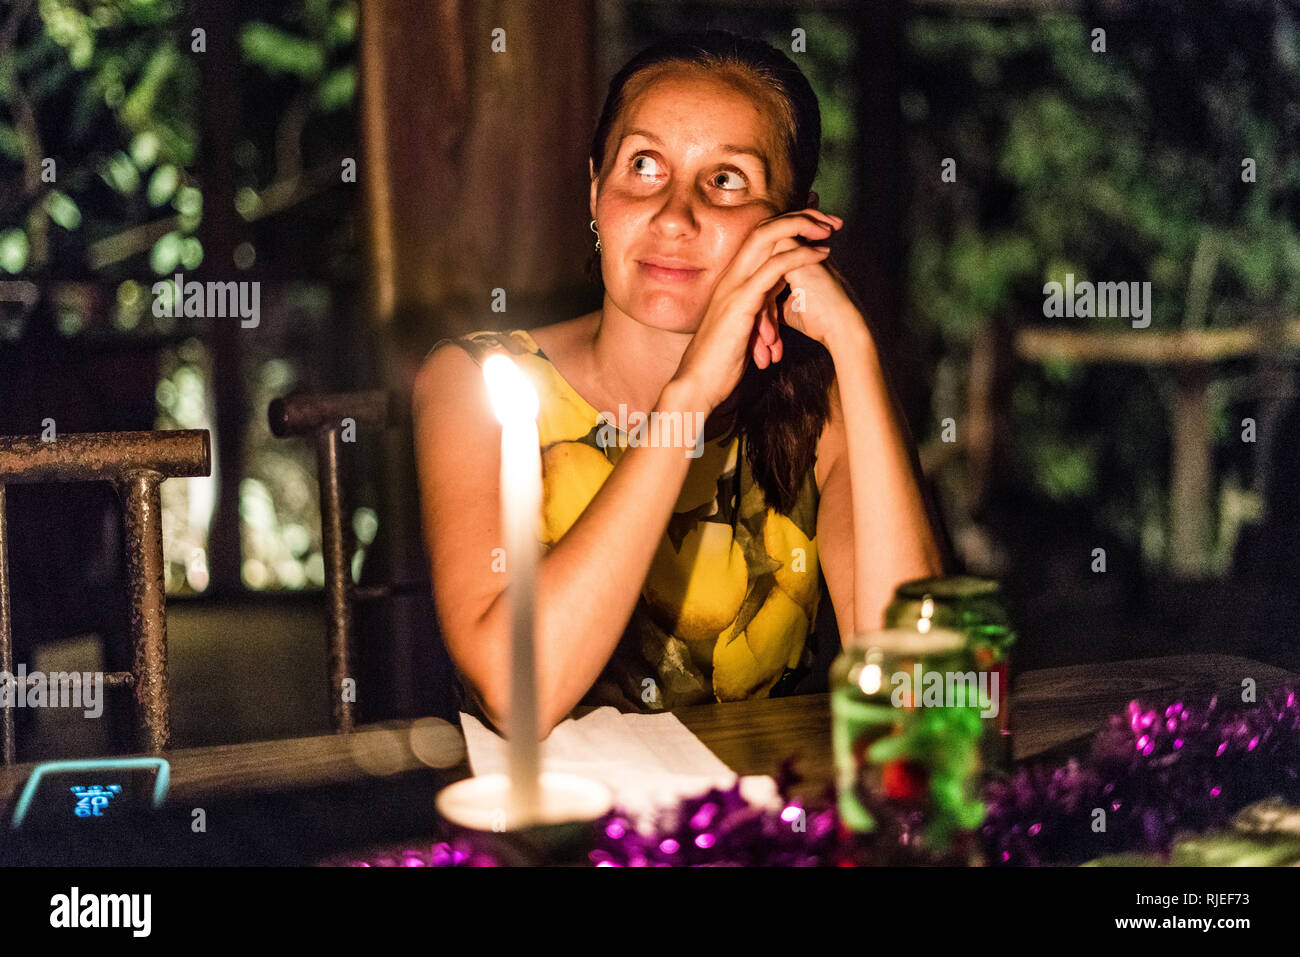 Un ritratto di una donna bellissima fantasticando a lume di candela durante una romantica cena presso un ristorante locale in una foresta pluviale tropicale del Costa Rica Foto Stock